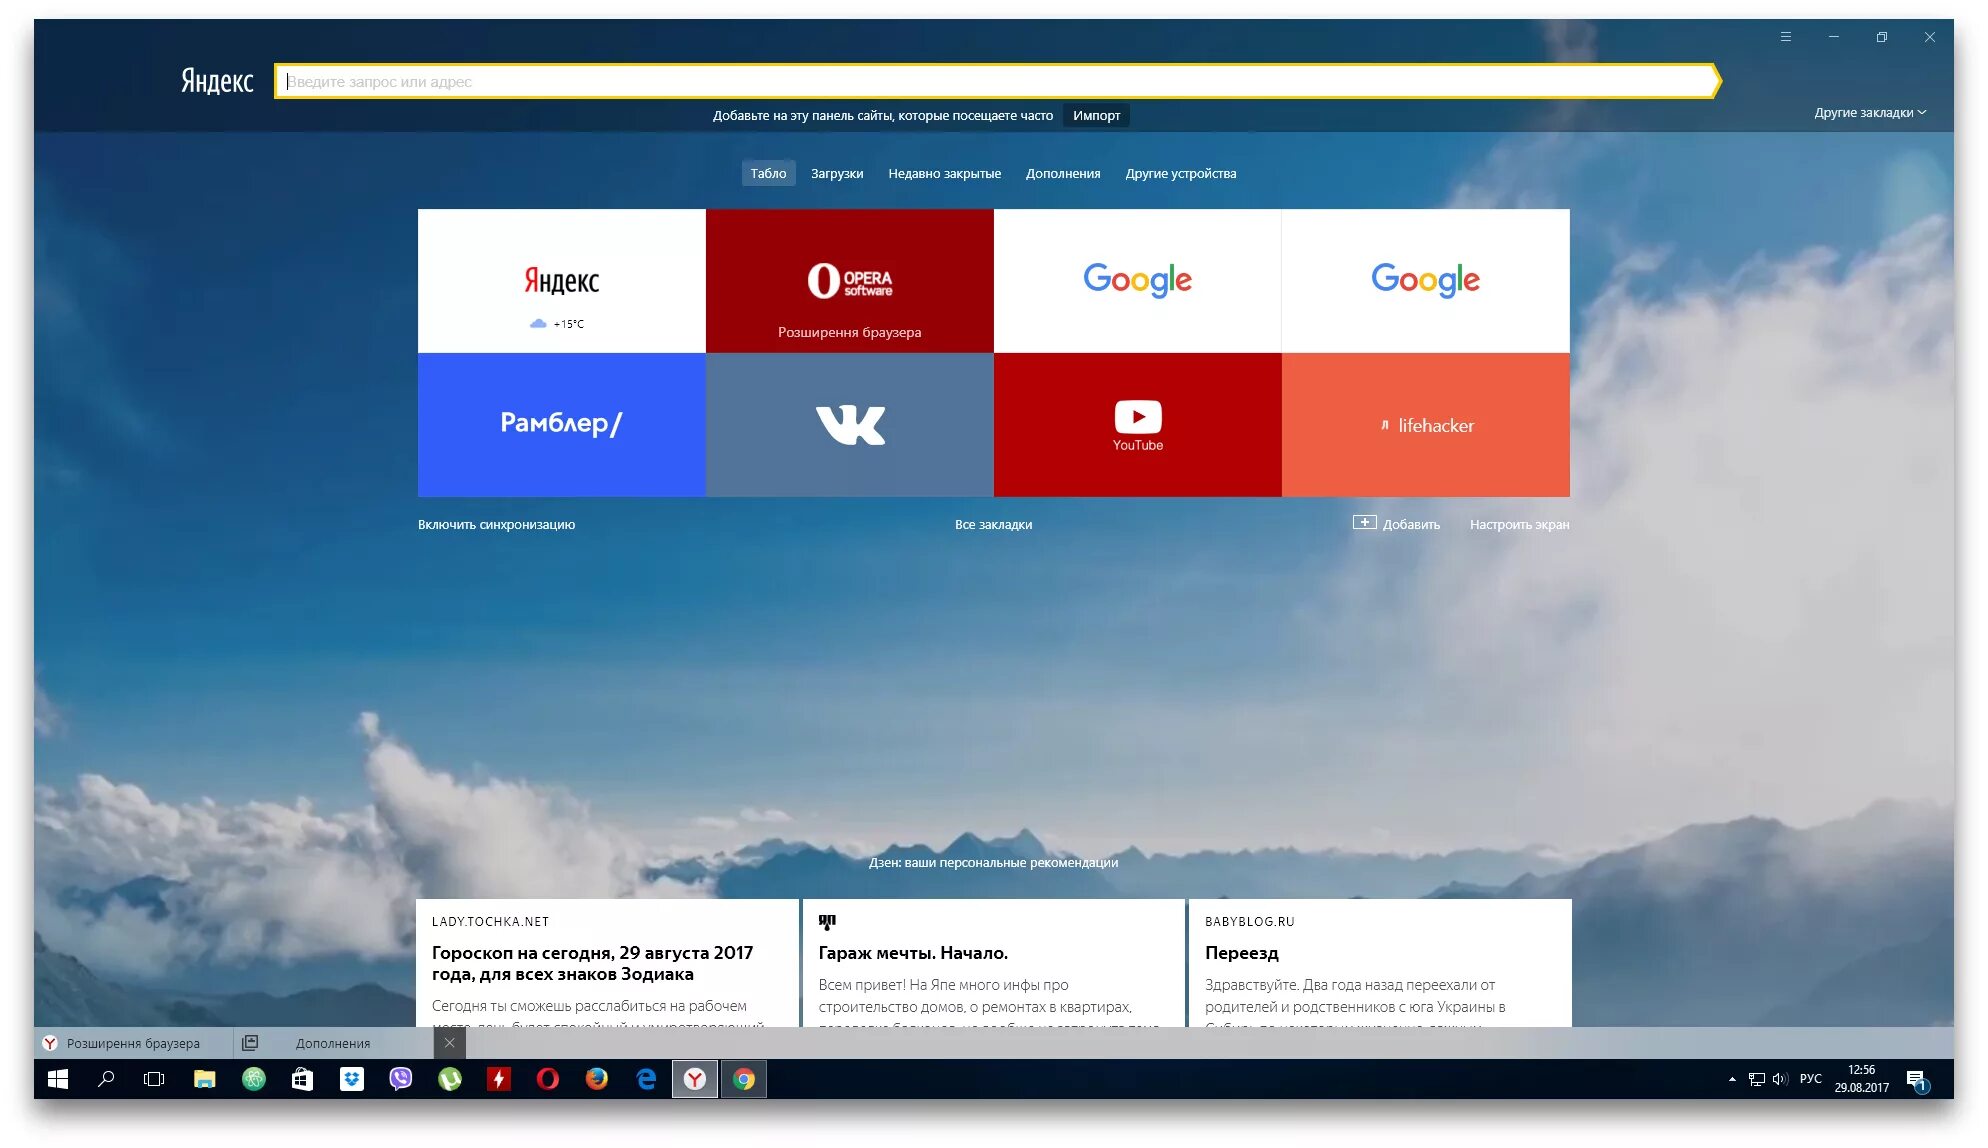 Сайт браузер на русском языке. Яндекс.браузер. Yandex браузер. Яндекс браузер картинки. Яндекс браузер браузер.